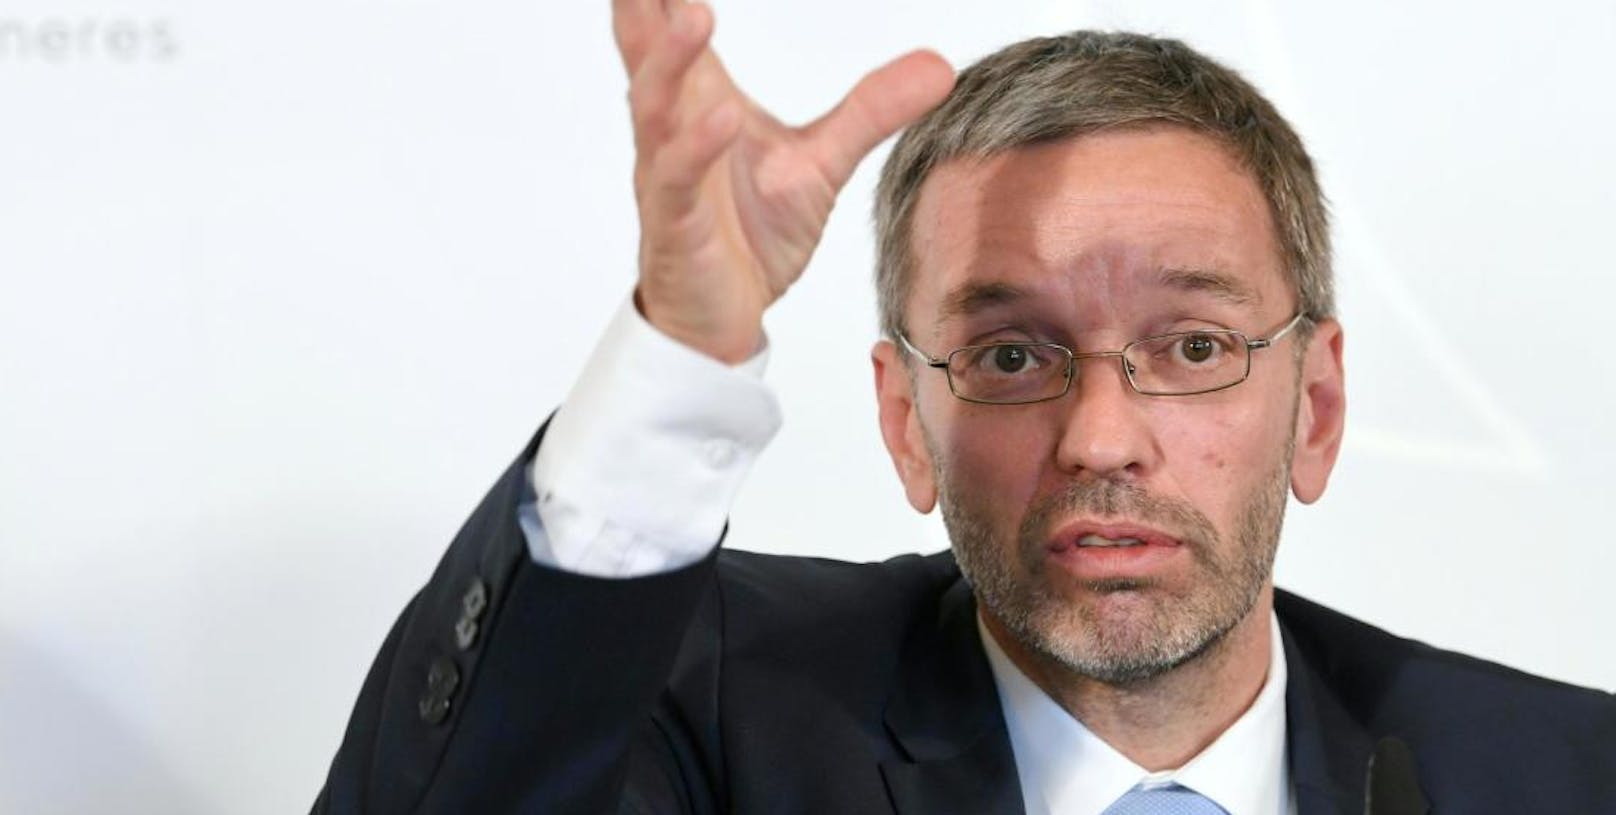 FPÖ-Klubchef Herbert Kickl wettert gegen die Regierung.